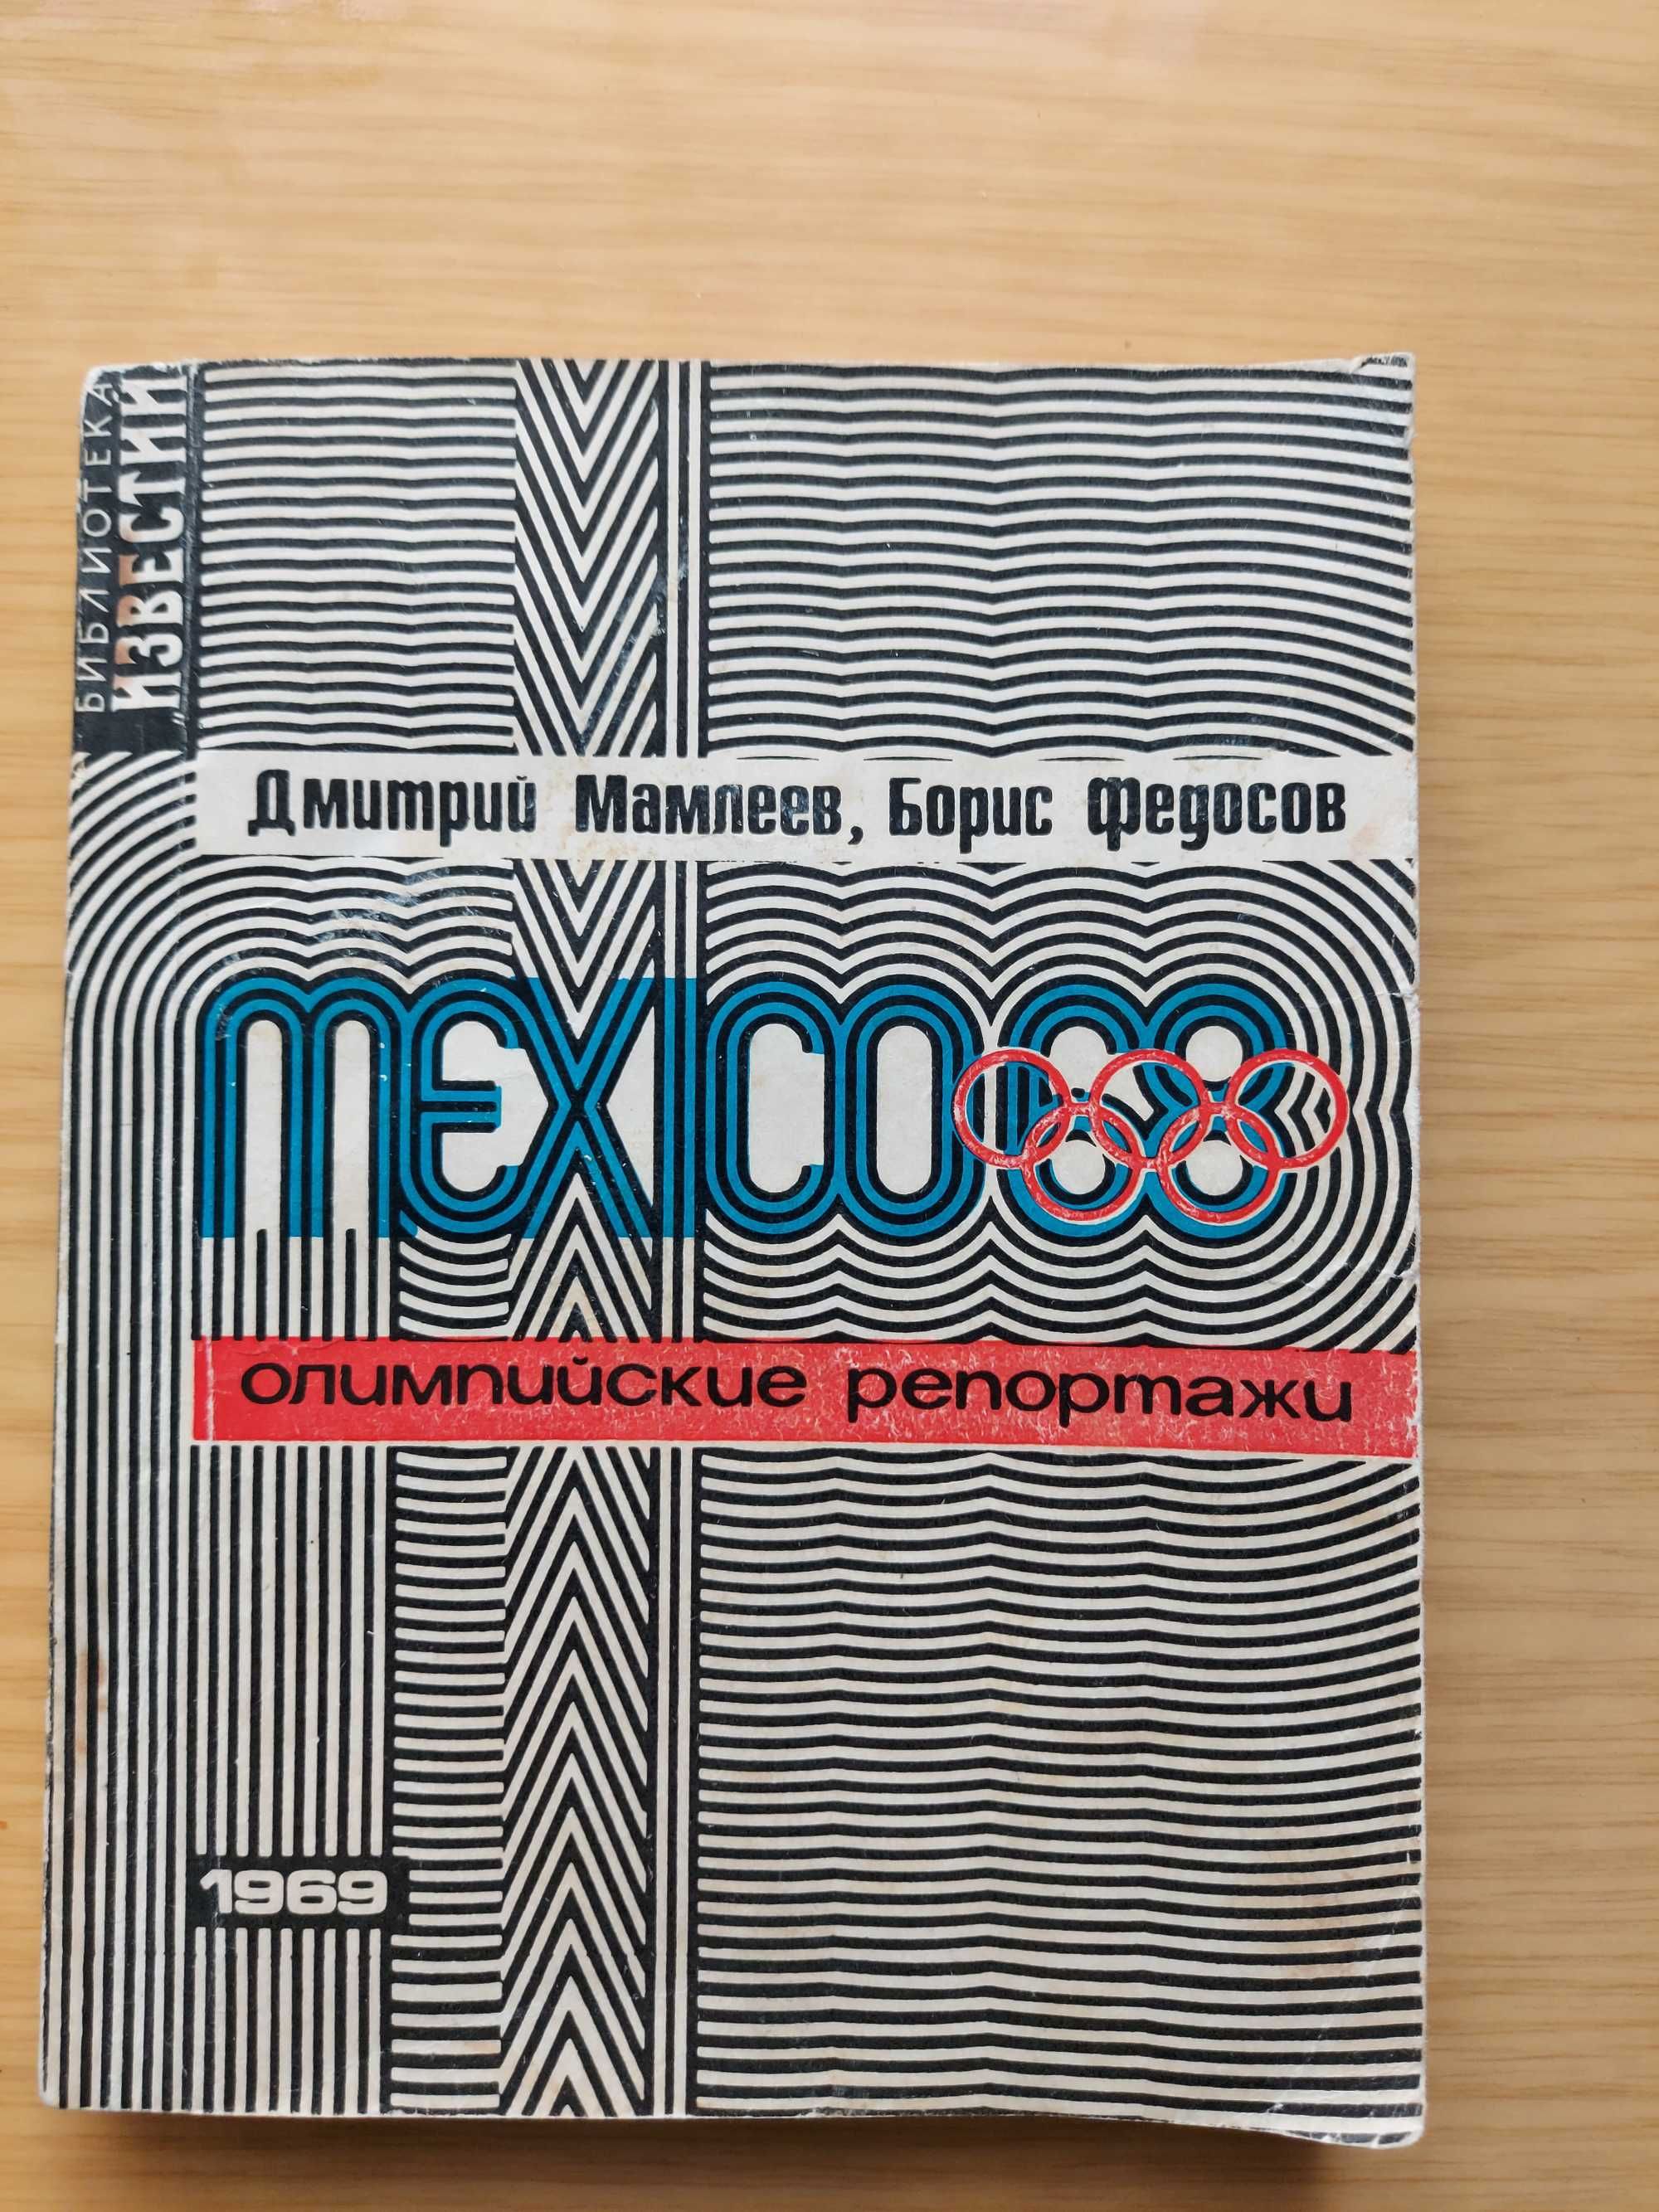 Мехісо 68  Олимпийские репортажи